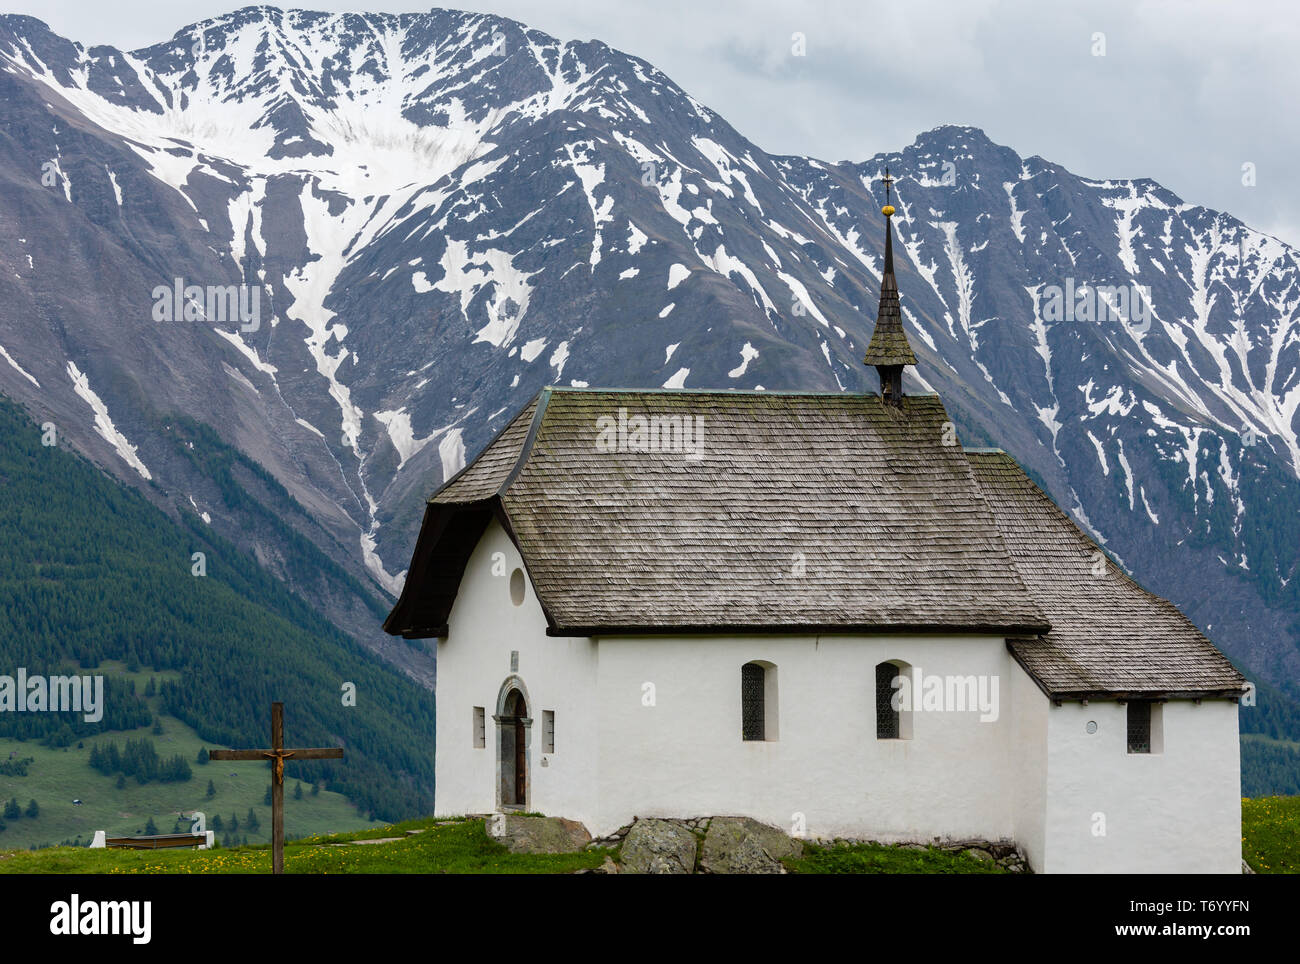 Small Church in Bettmeralp, Alps, Switzerland Stock Photo